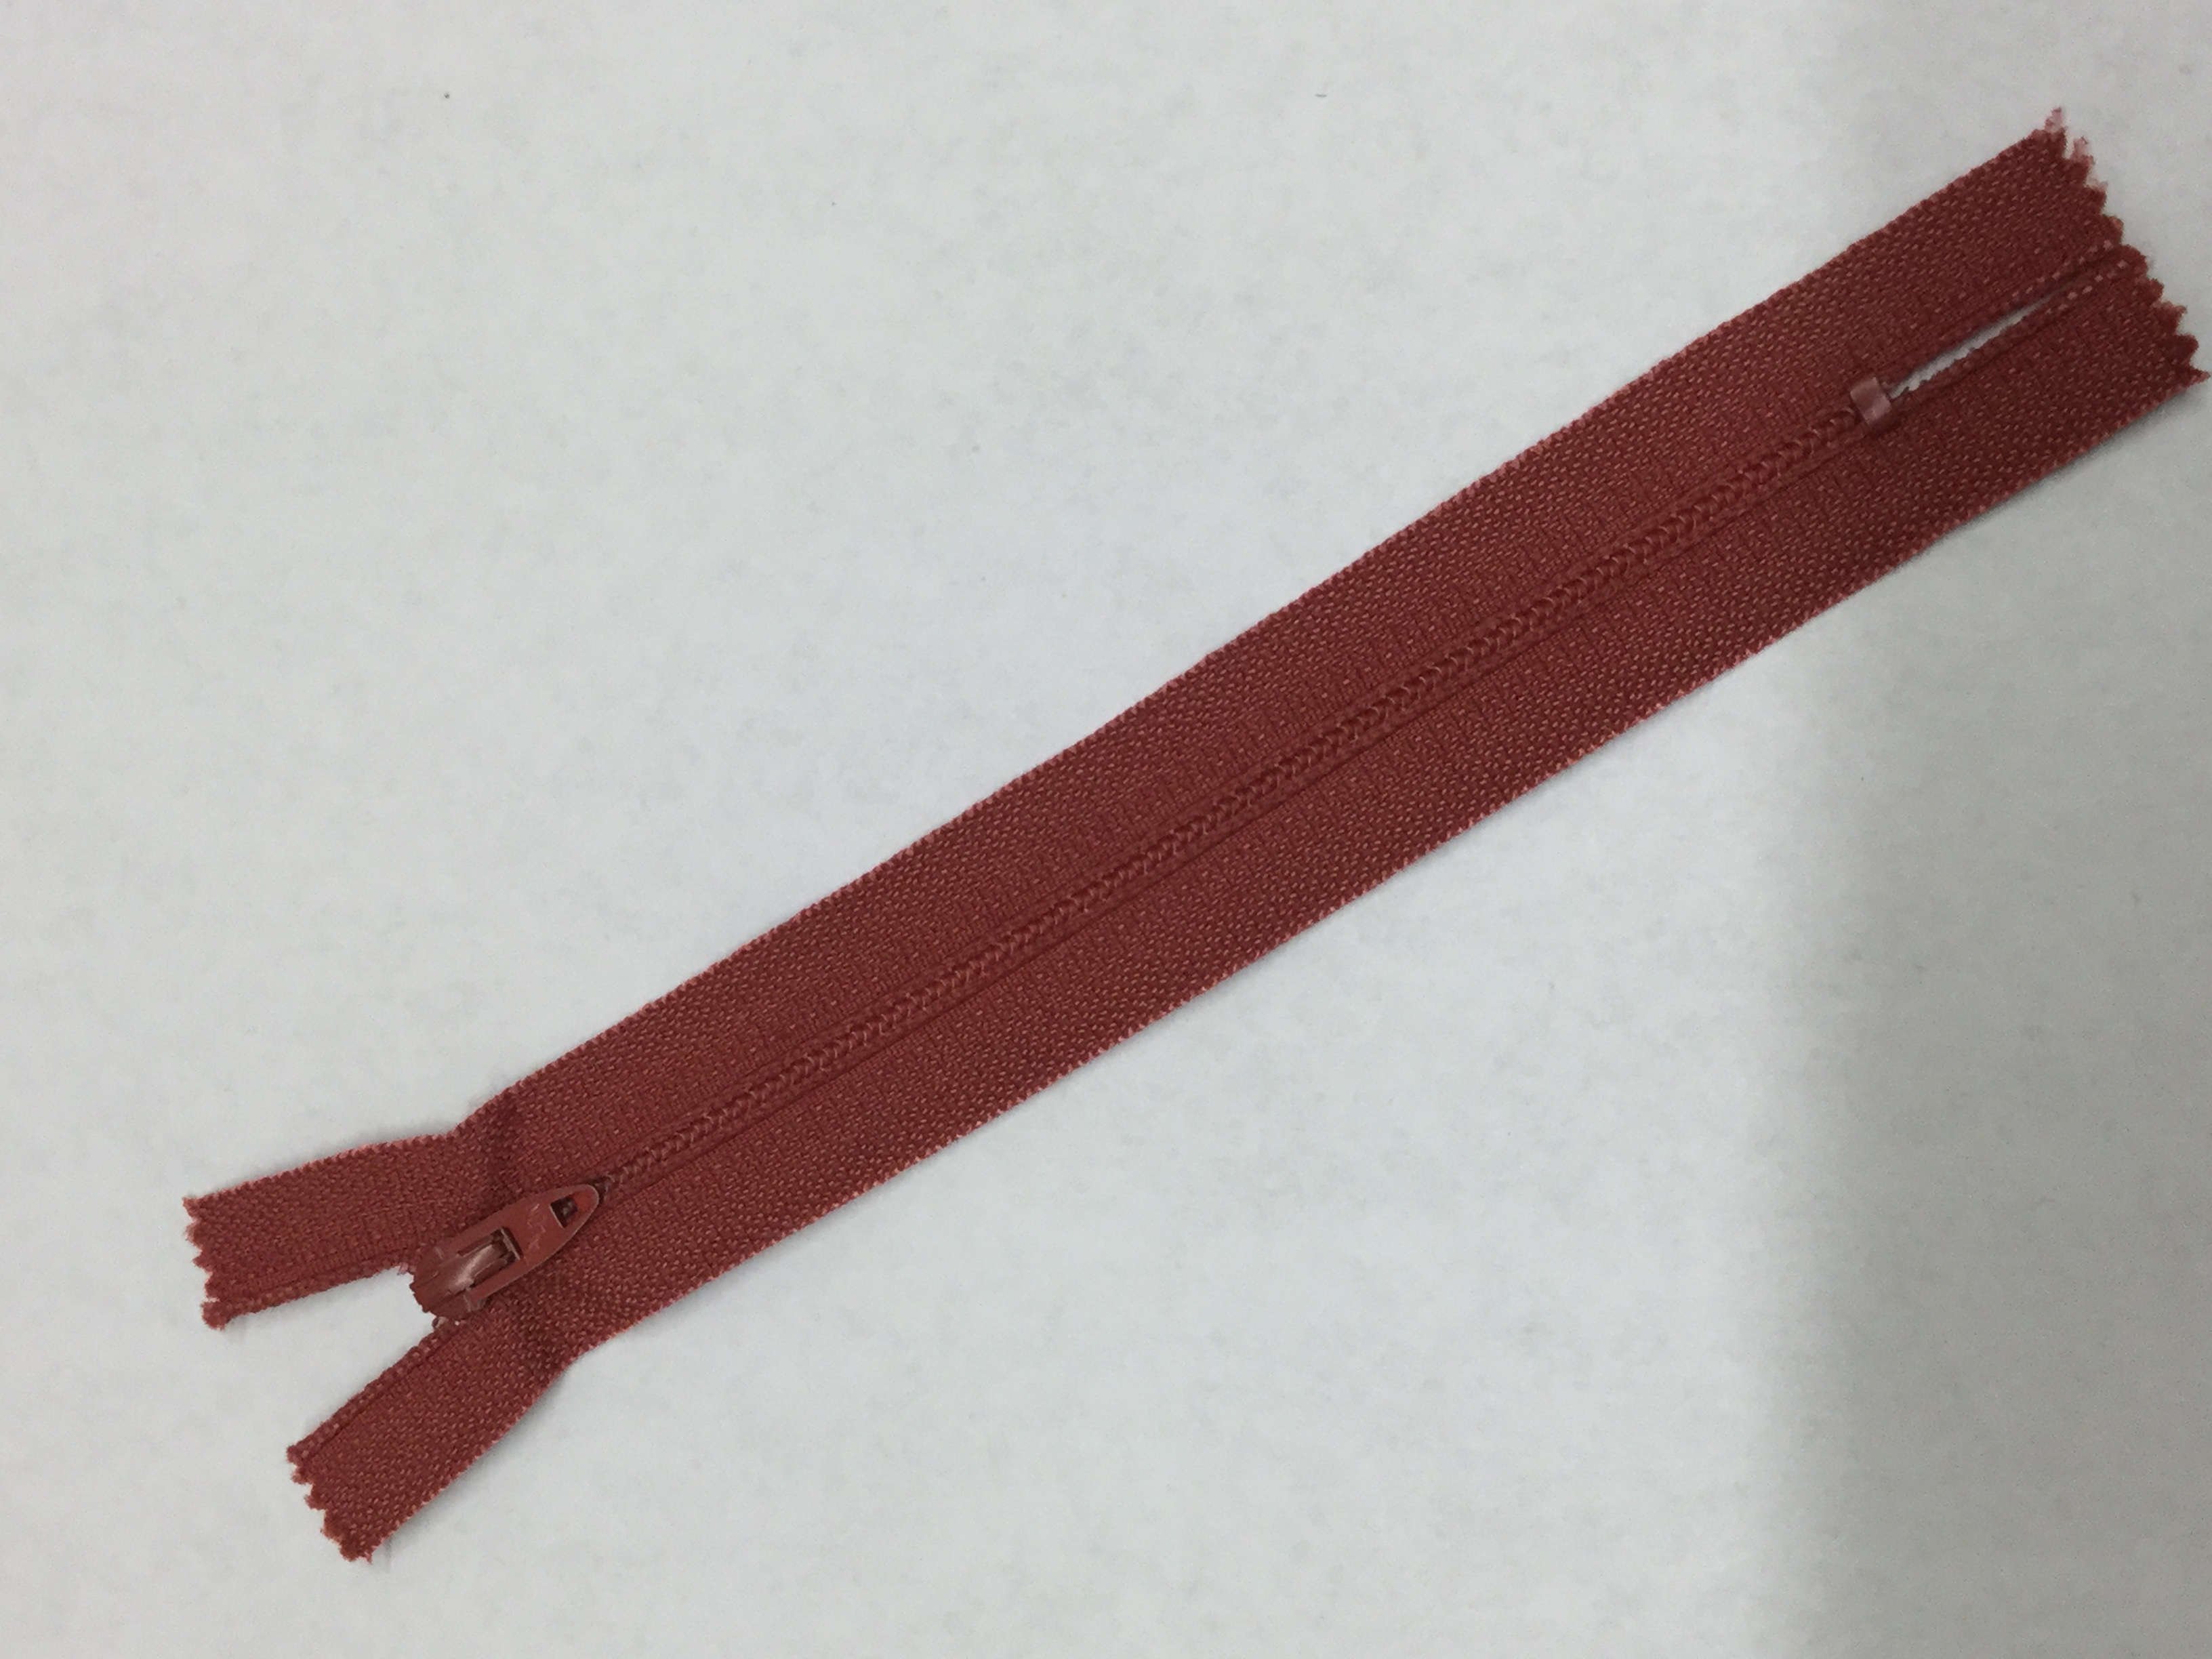 07 inch - Talon Nylon Coil Metal Pull Zipper - Faded Red